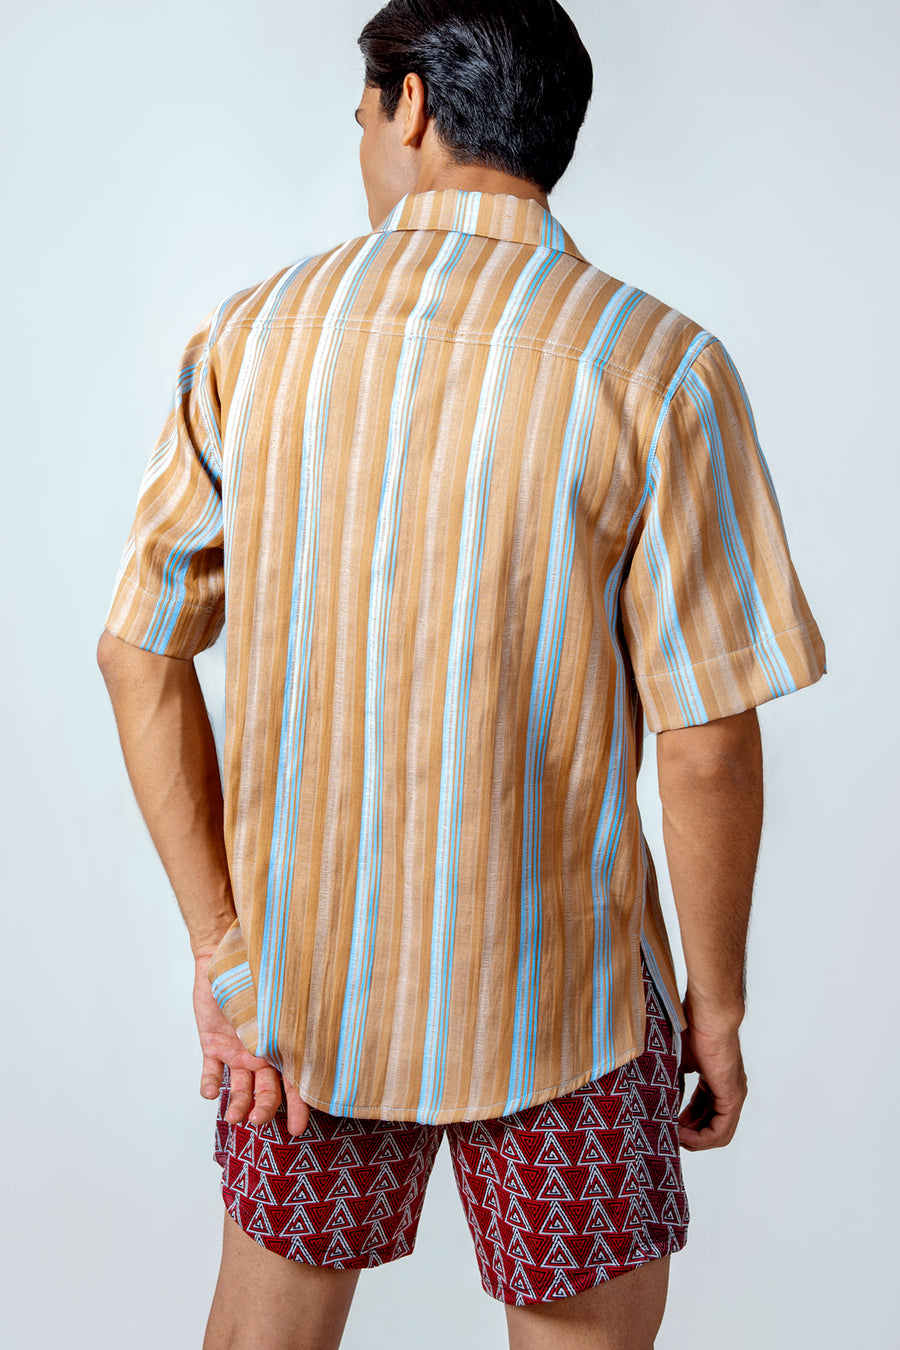 Stripe A Pose Shirt